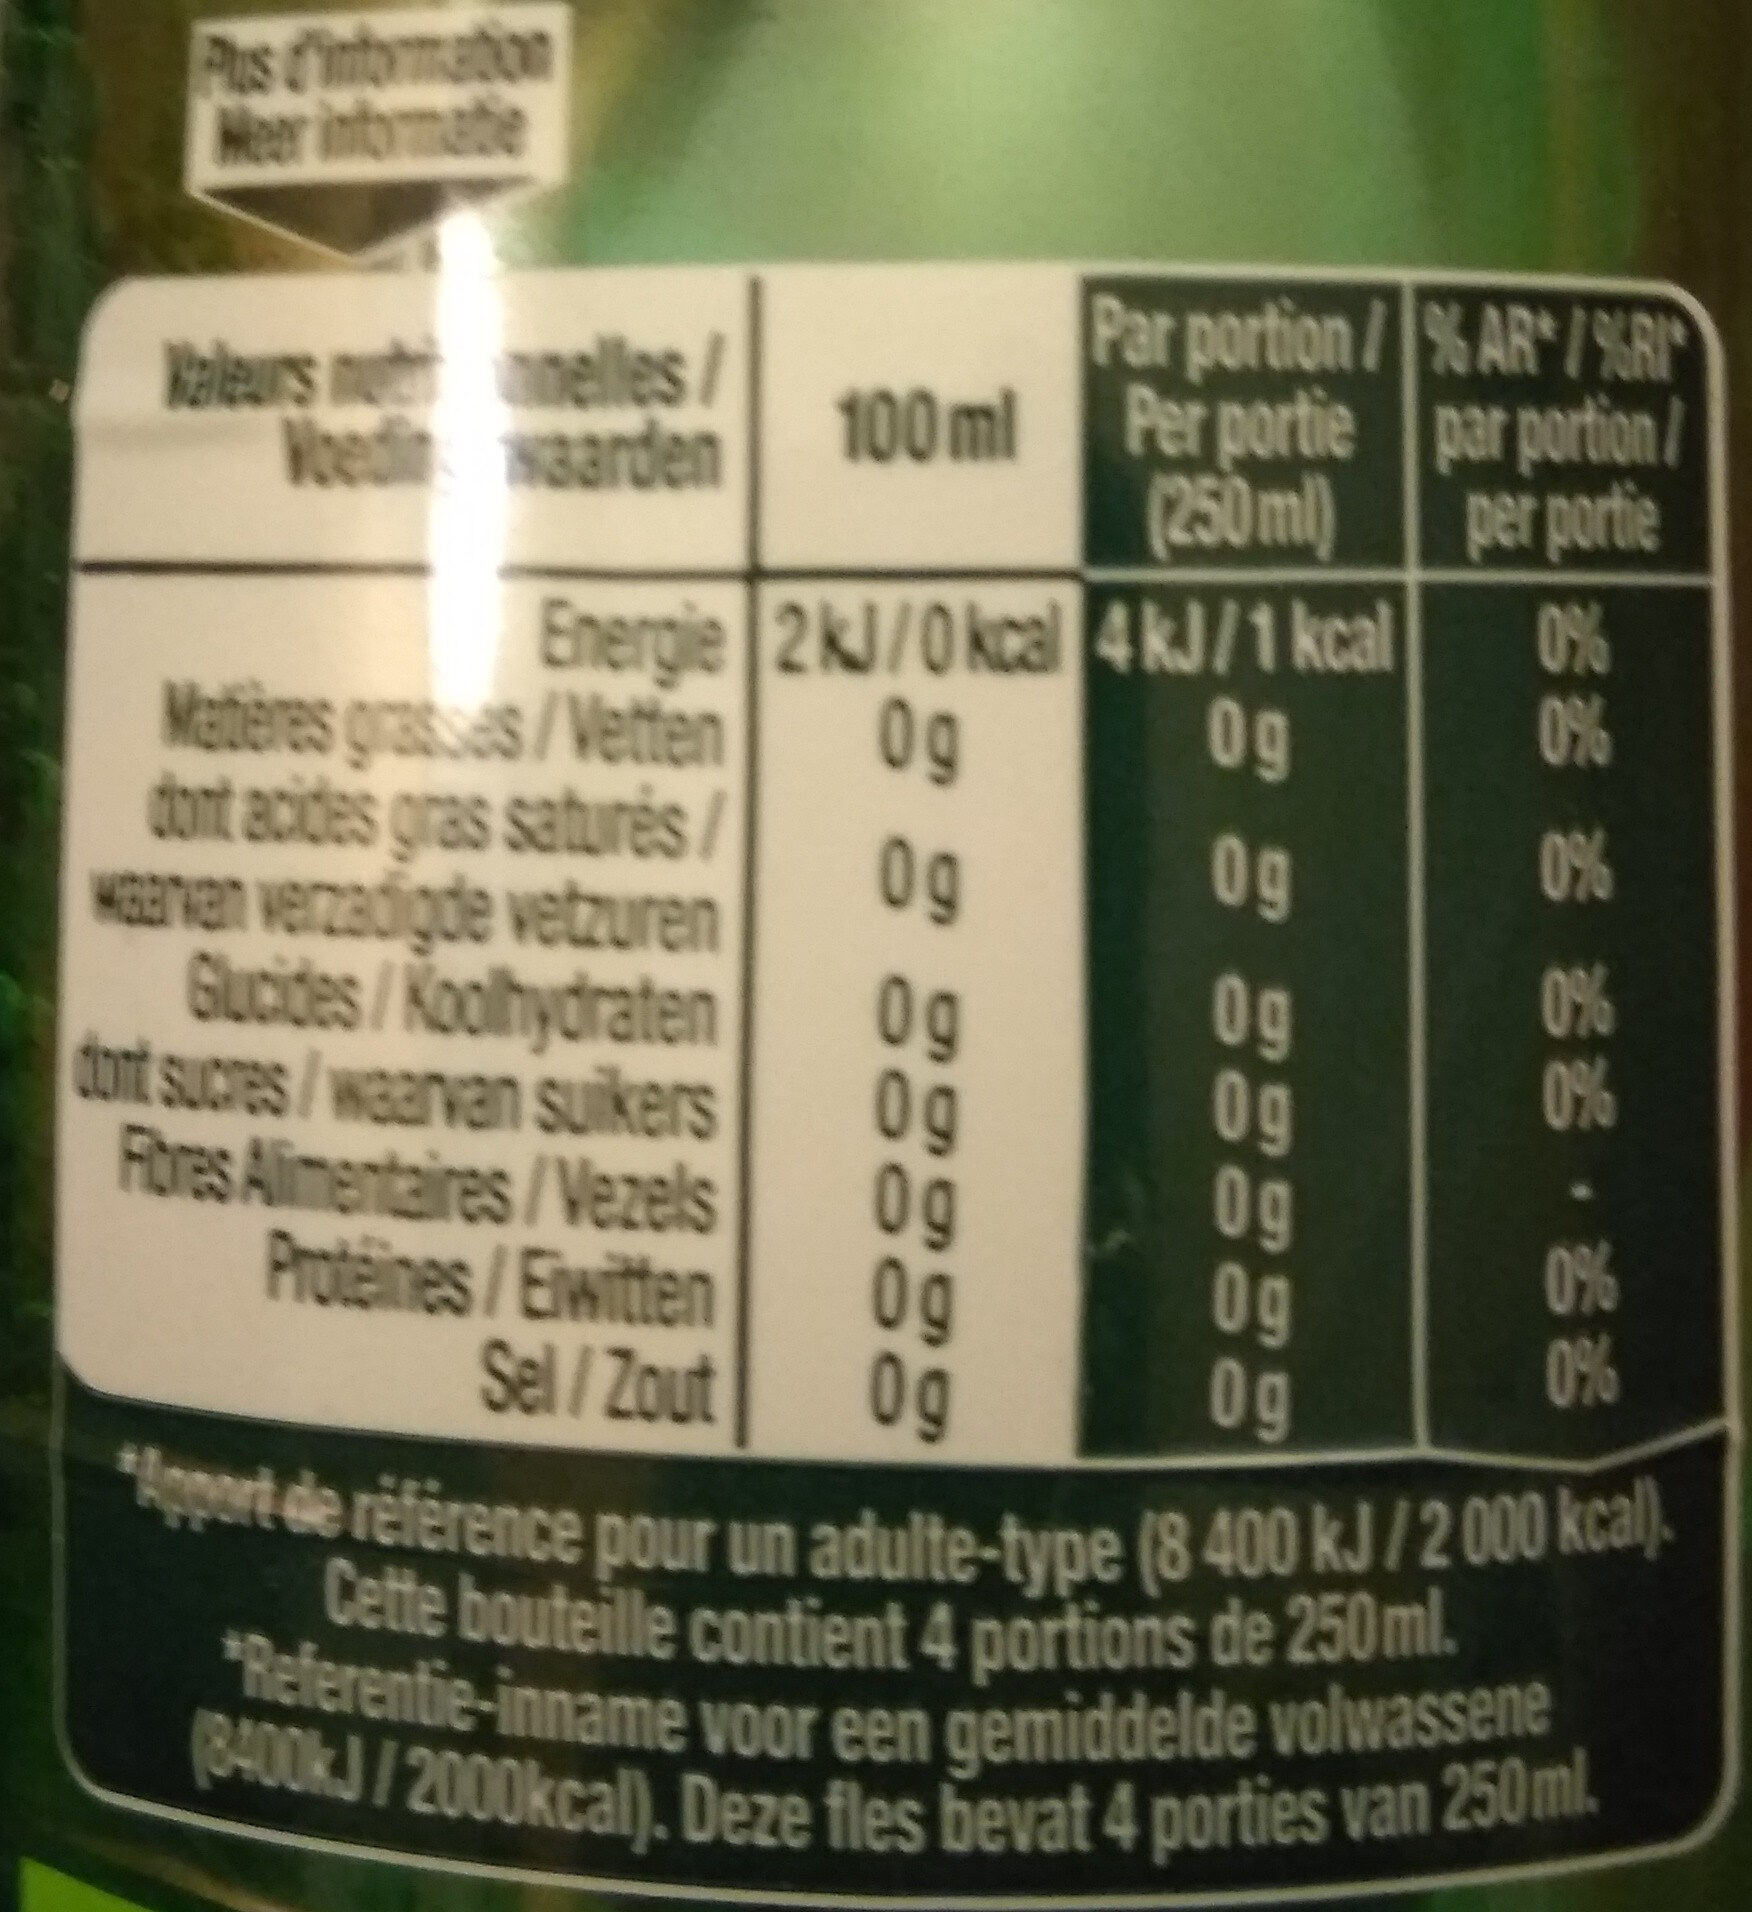 Perrier citron vert - Tableau nutritionnel